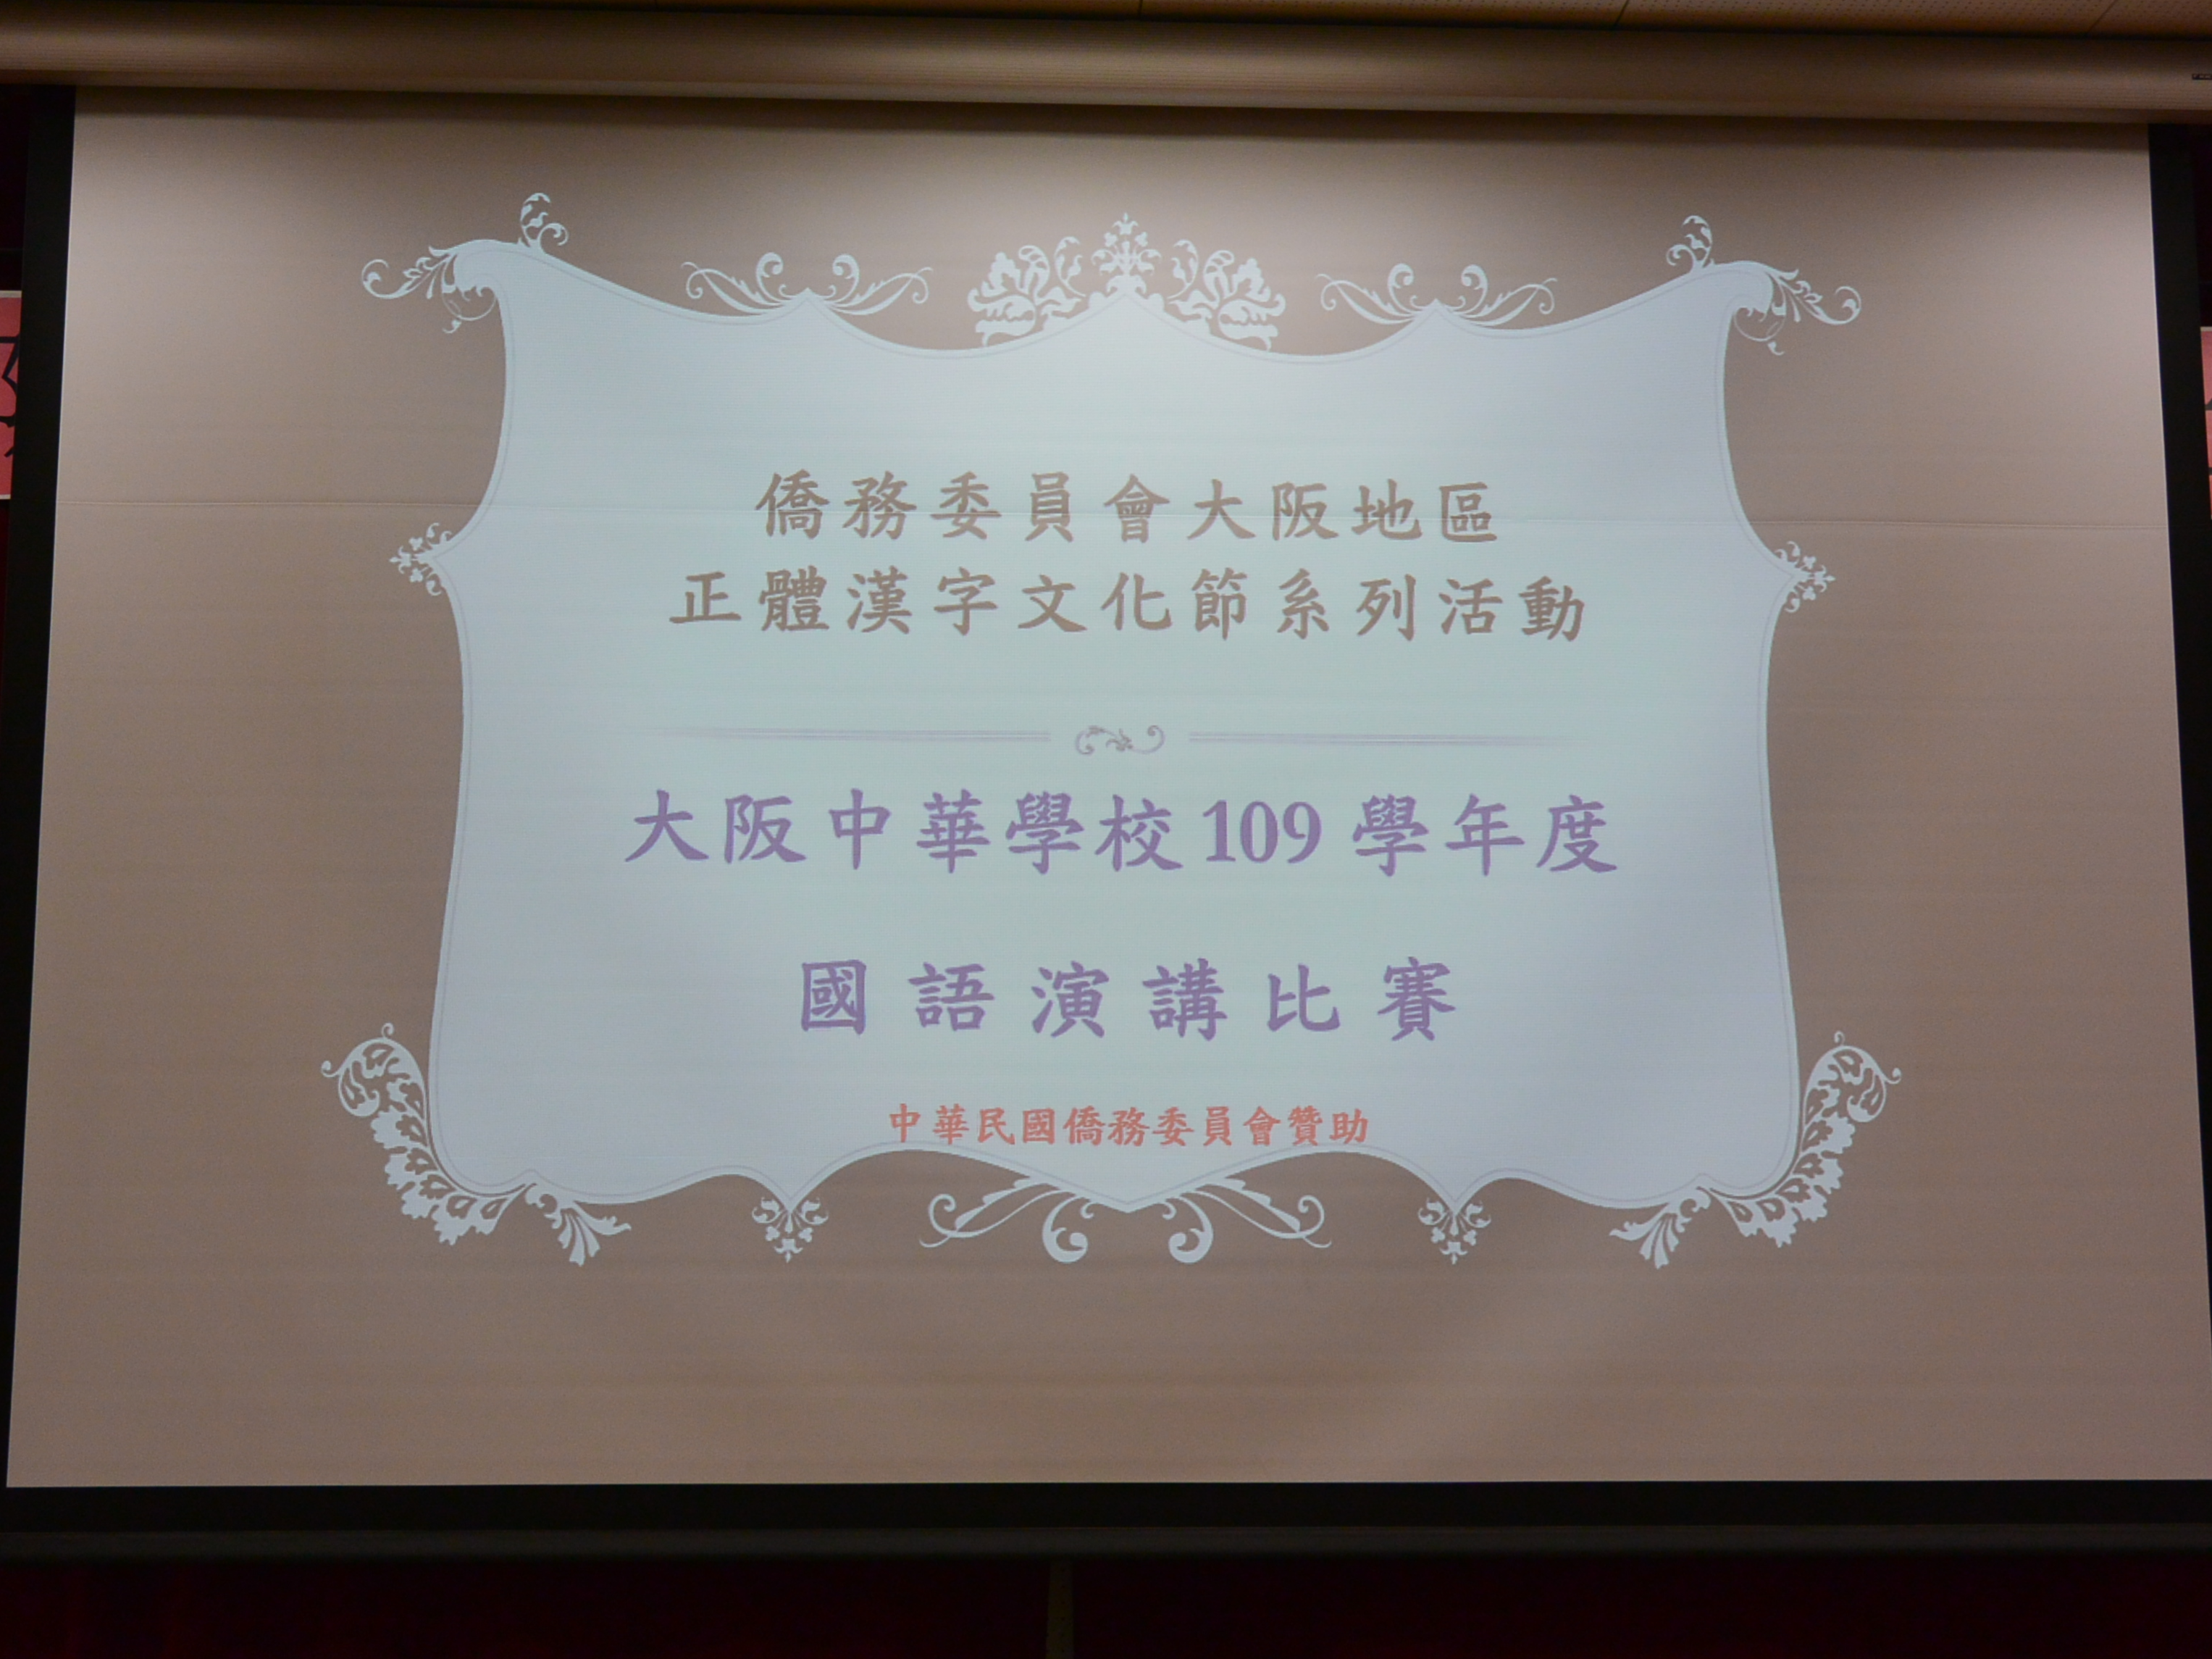 大阪中華學校   2020 華語文演講比賽圖片